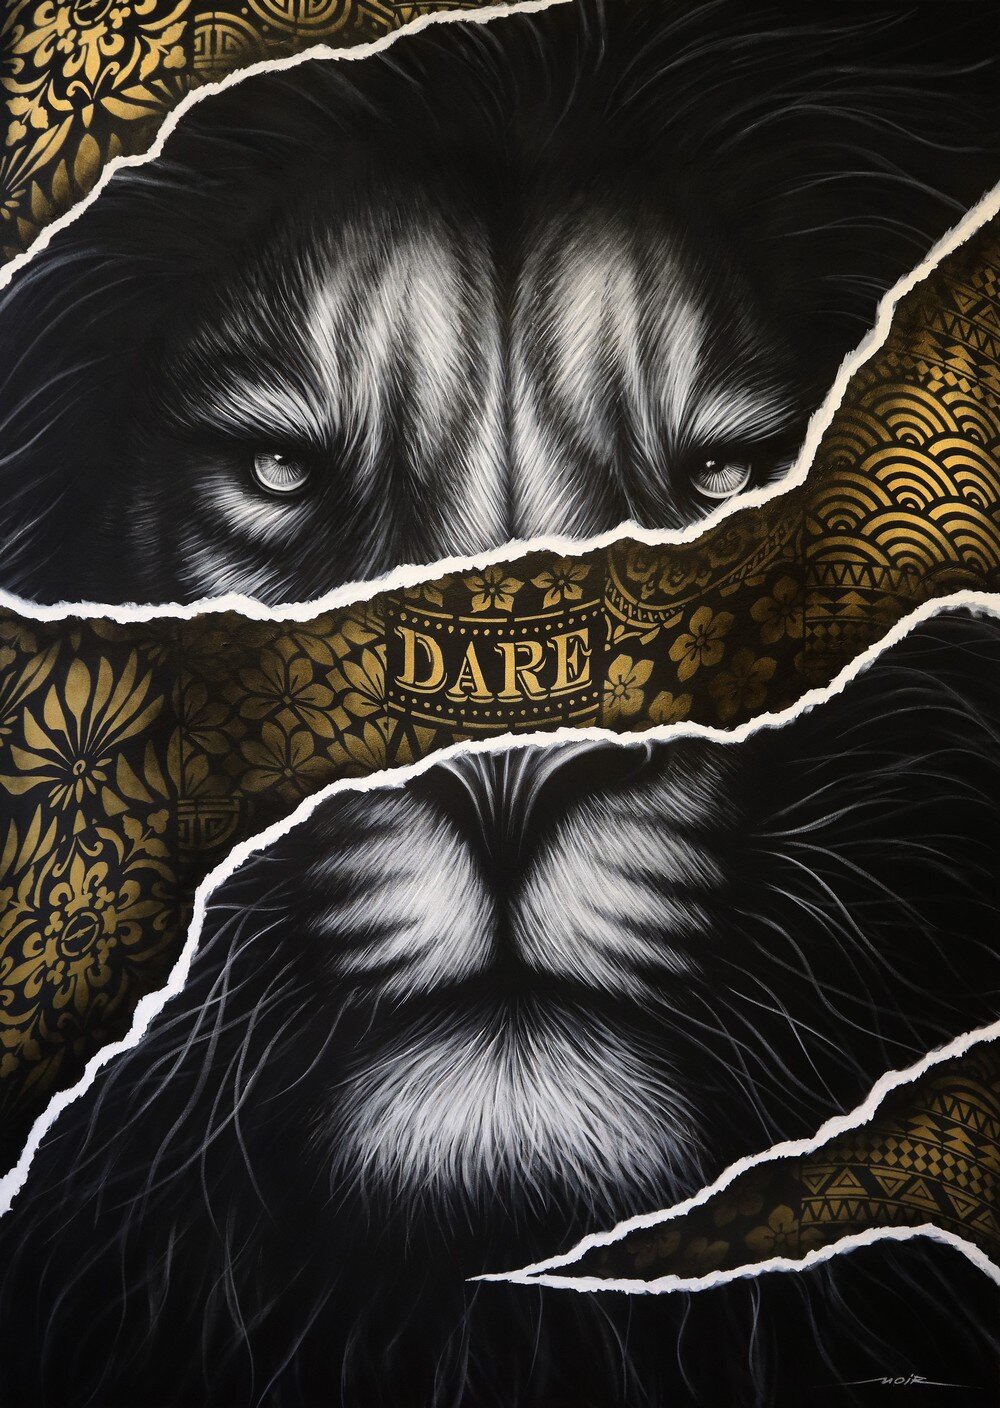 Фото Черно-белый портрет льва, (dare / смею), by Люсьен Гилсон - художник NOIR